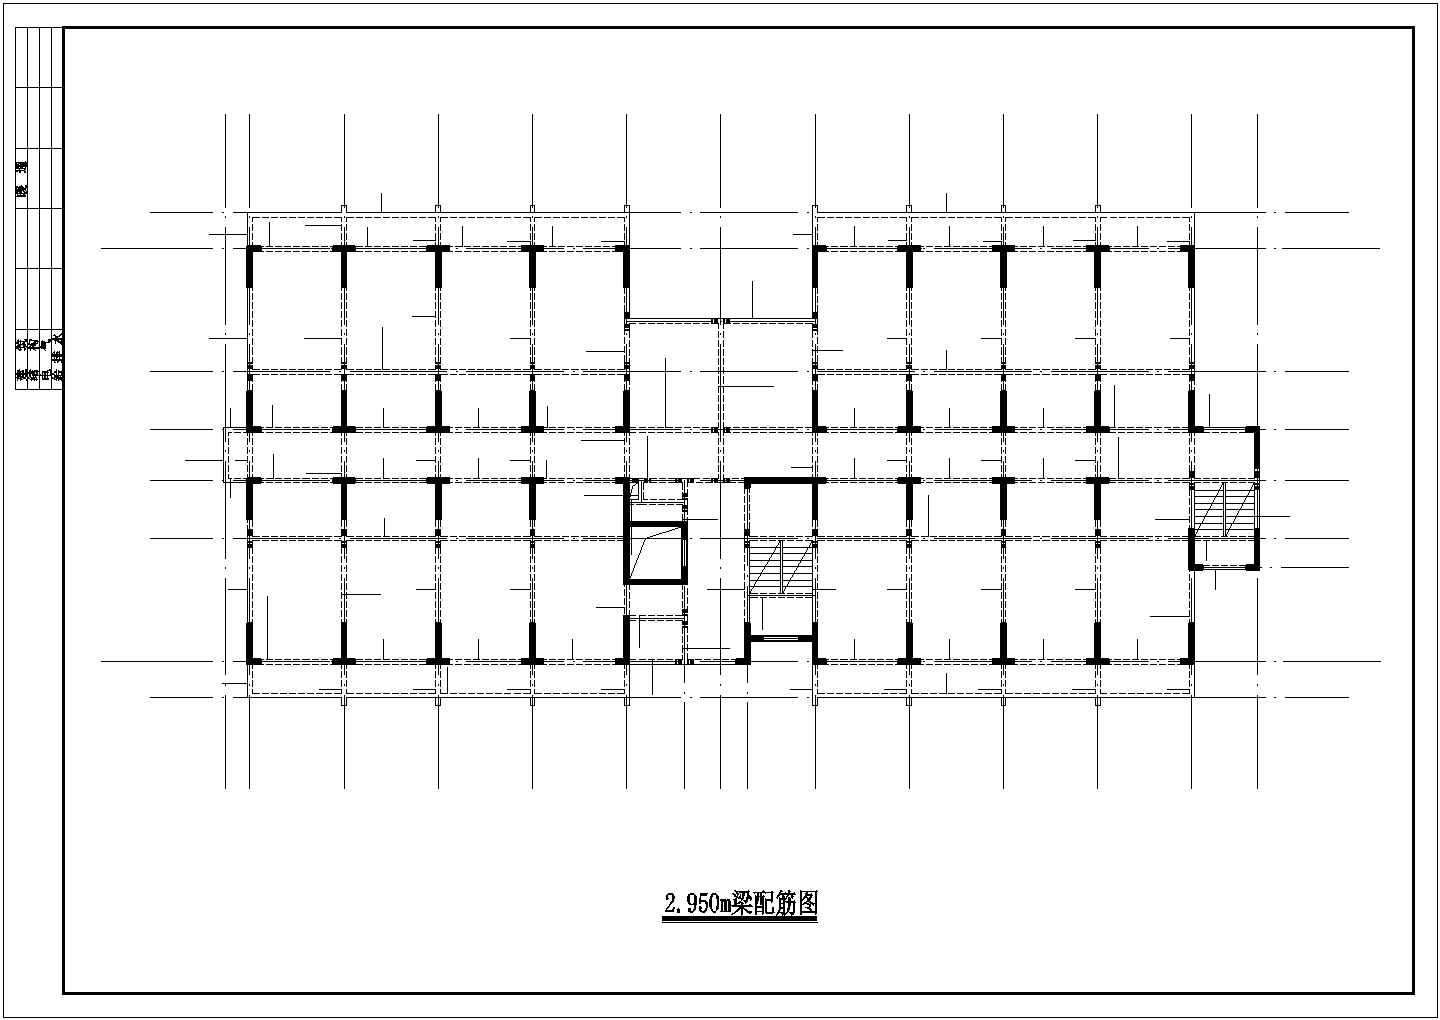 襄樊市某小区11层剪力墙结构公寓住宅楼全套结构设计CAD图纸